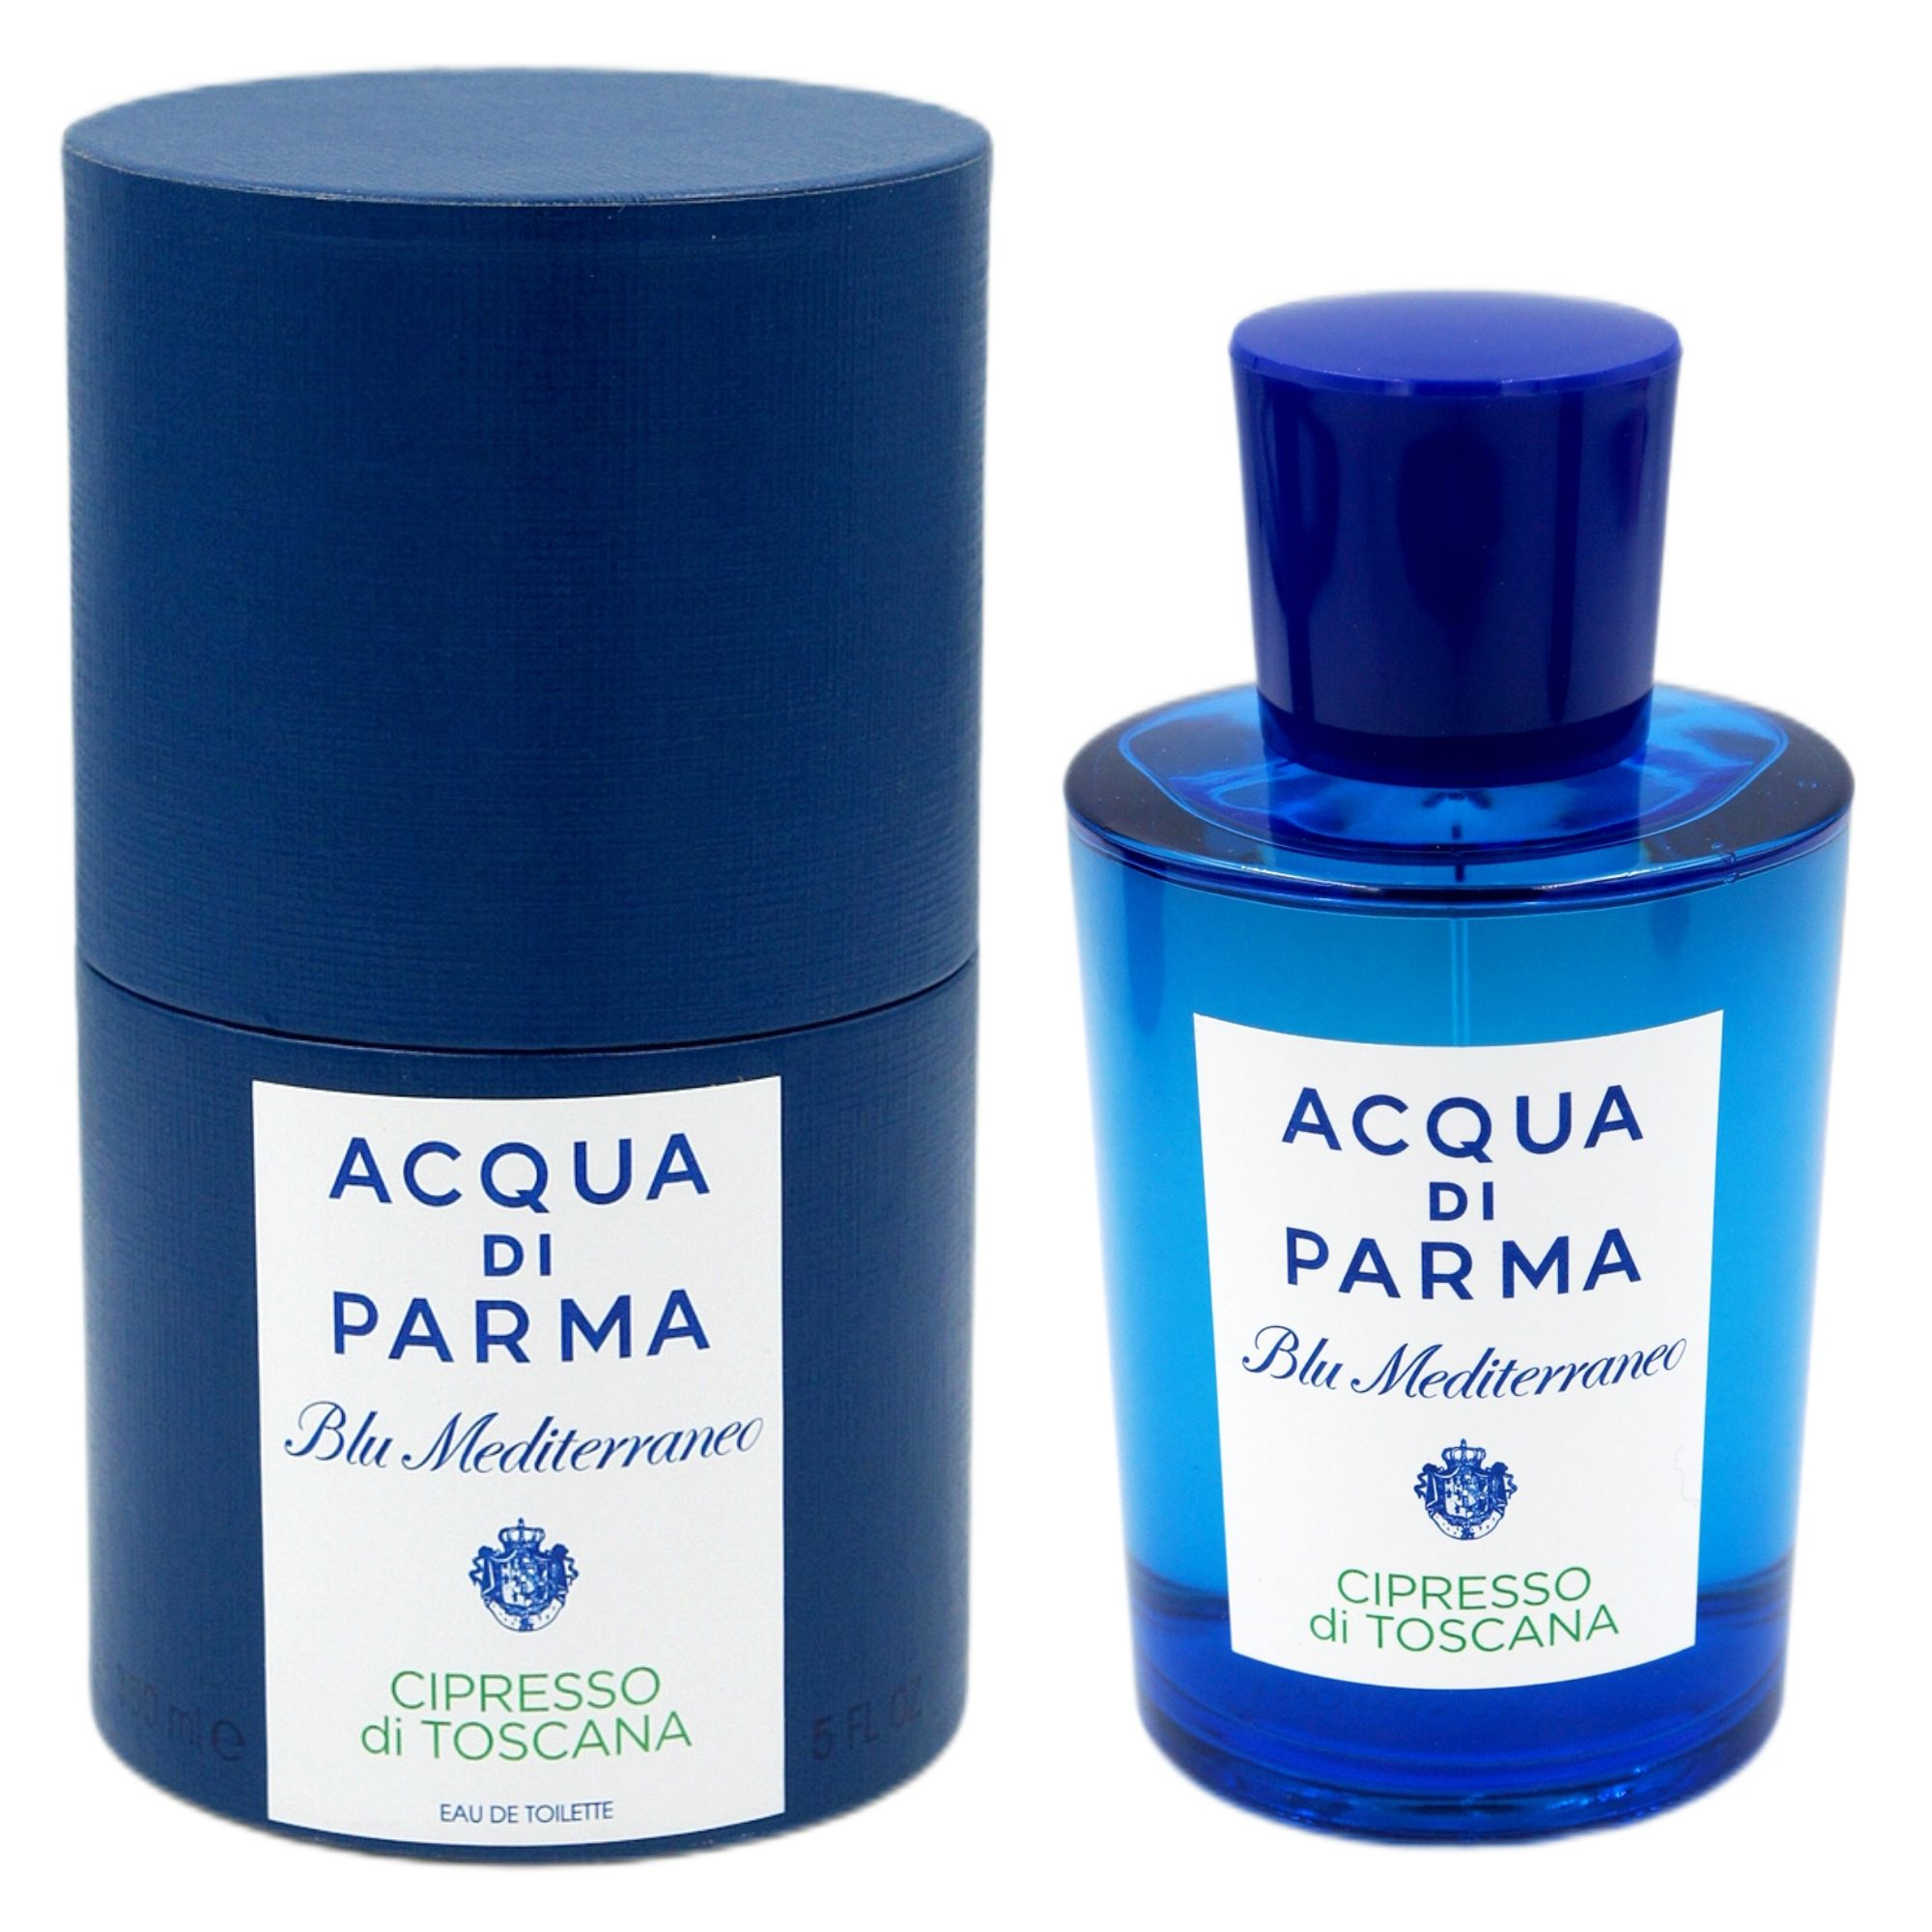 Acqua di parma Blue Mediterraneo -Cipresso di Toscana 藍色地中海-托斯卡納柏樹淡香水